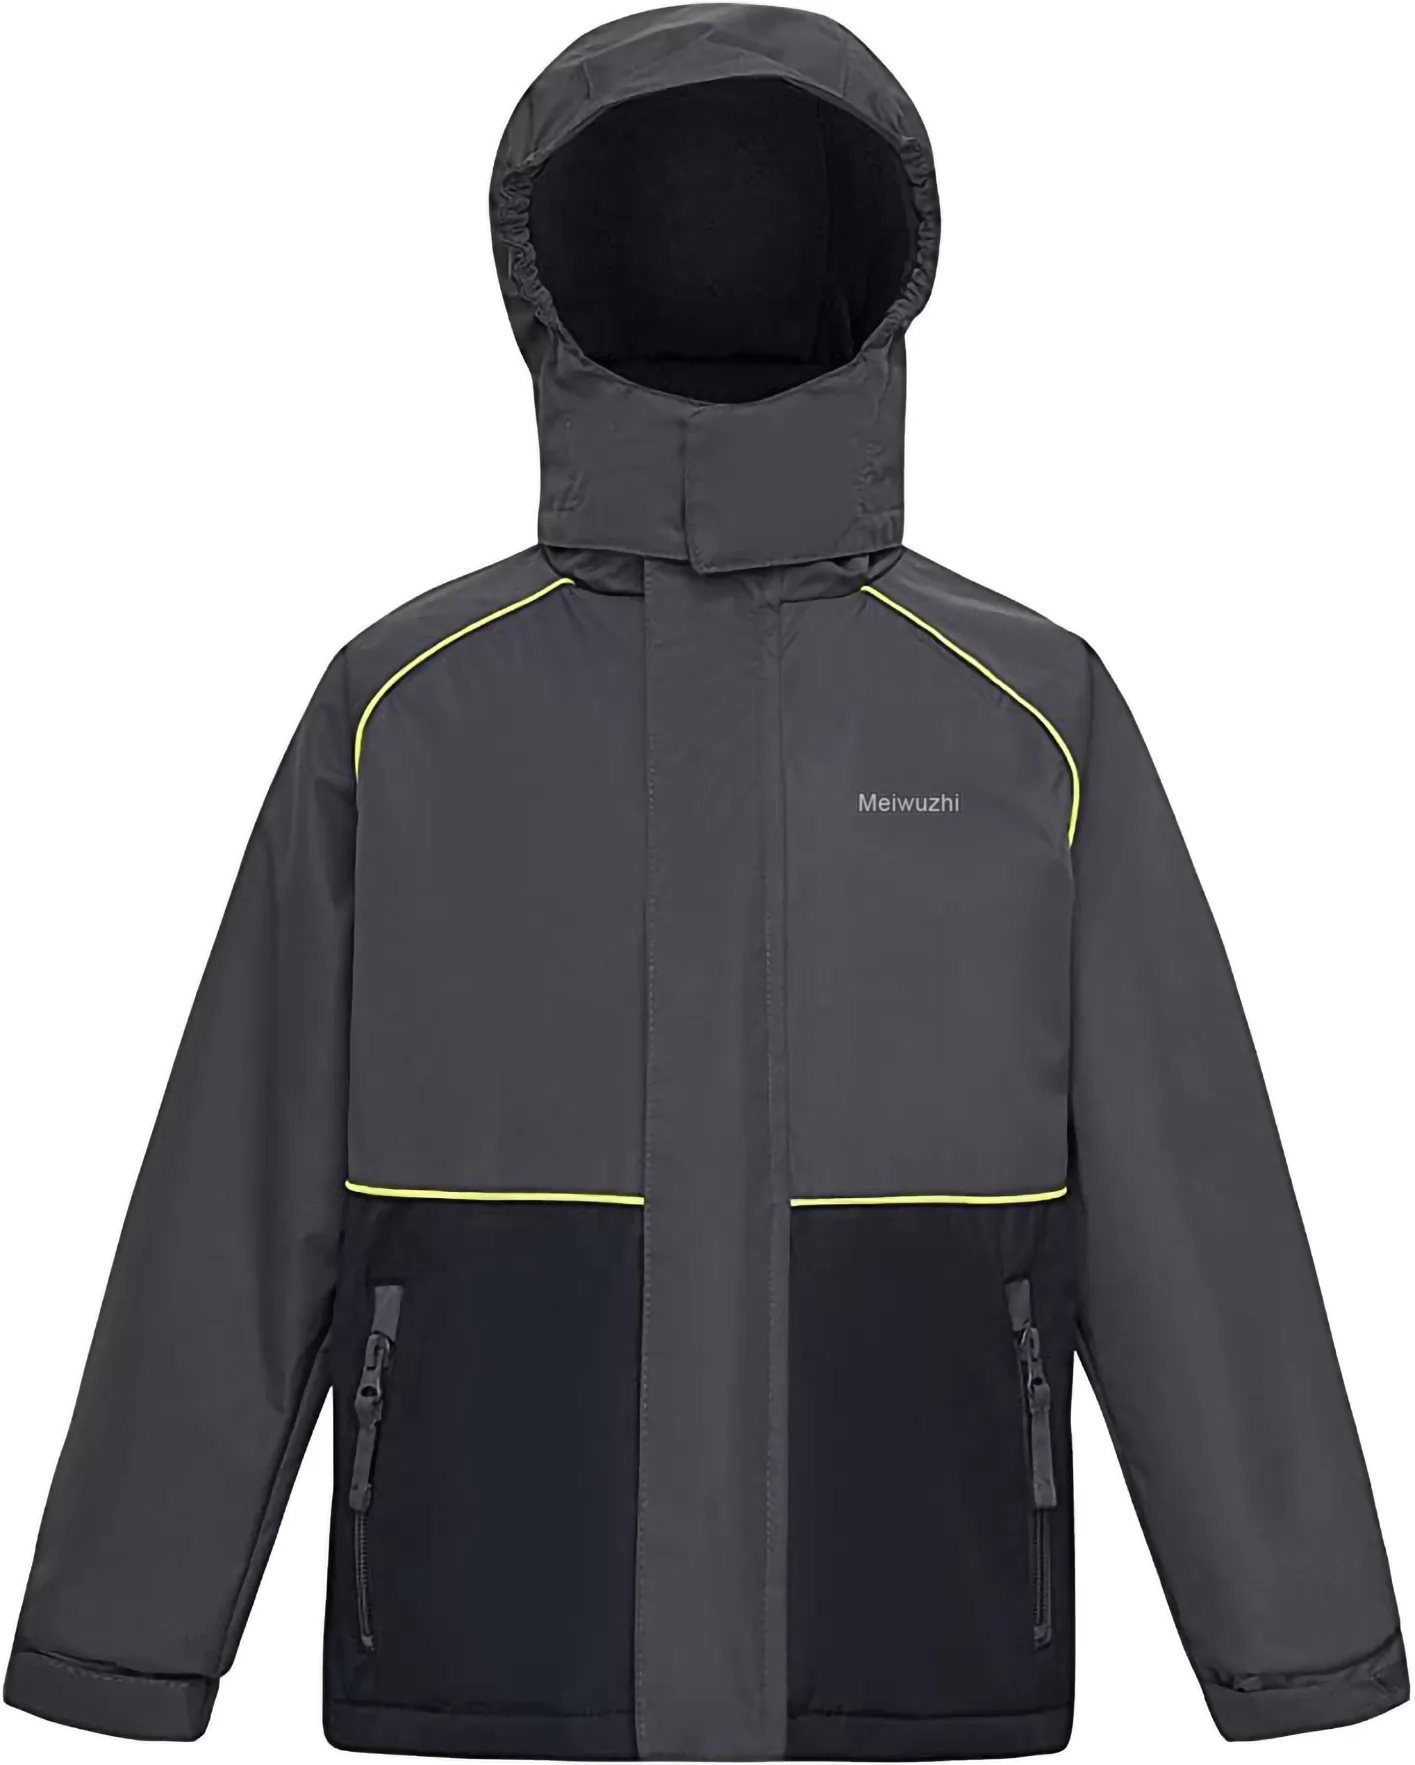 Meiwuzhi Boy‘s Waterproof Rain Jackets Kids Fleece Lined Rain Coat Hooded Outdoor Windbreaker